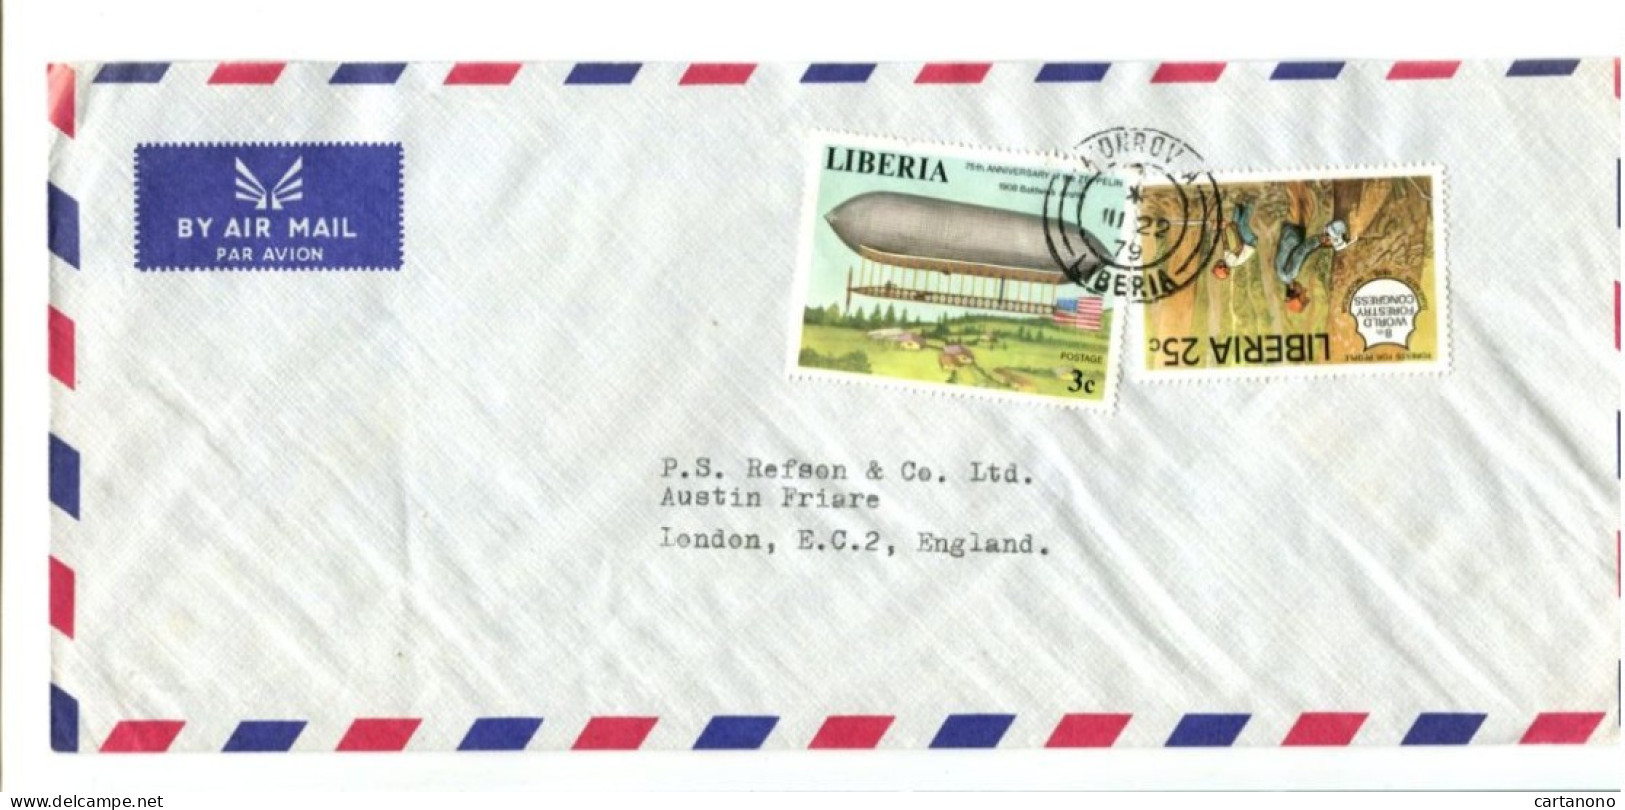 LIBERIA - Affranchissement Sur Lettre Par Avion - Zeppelin / Congrès Forestier - Liberia